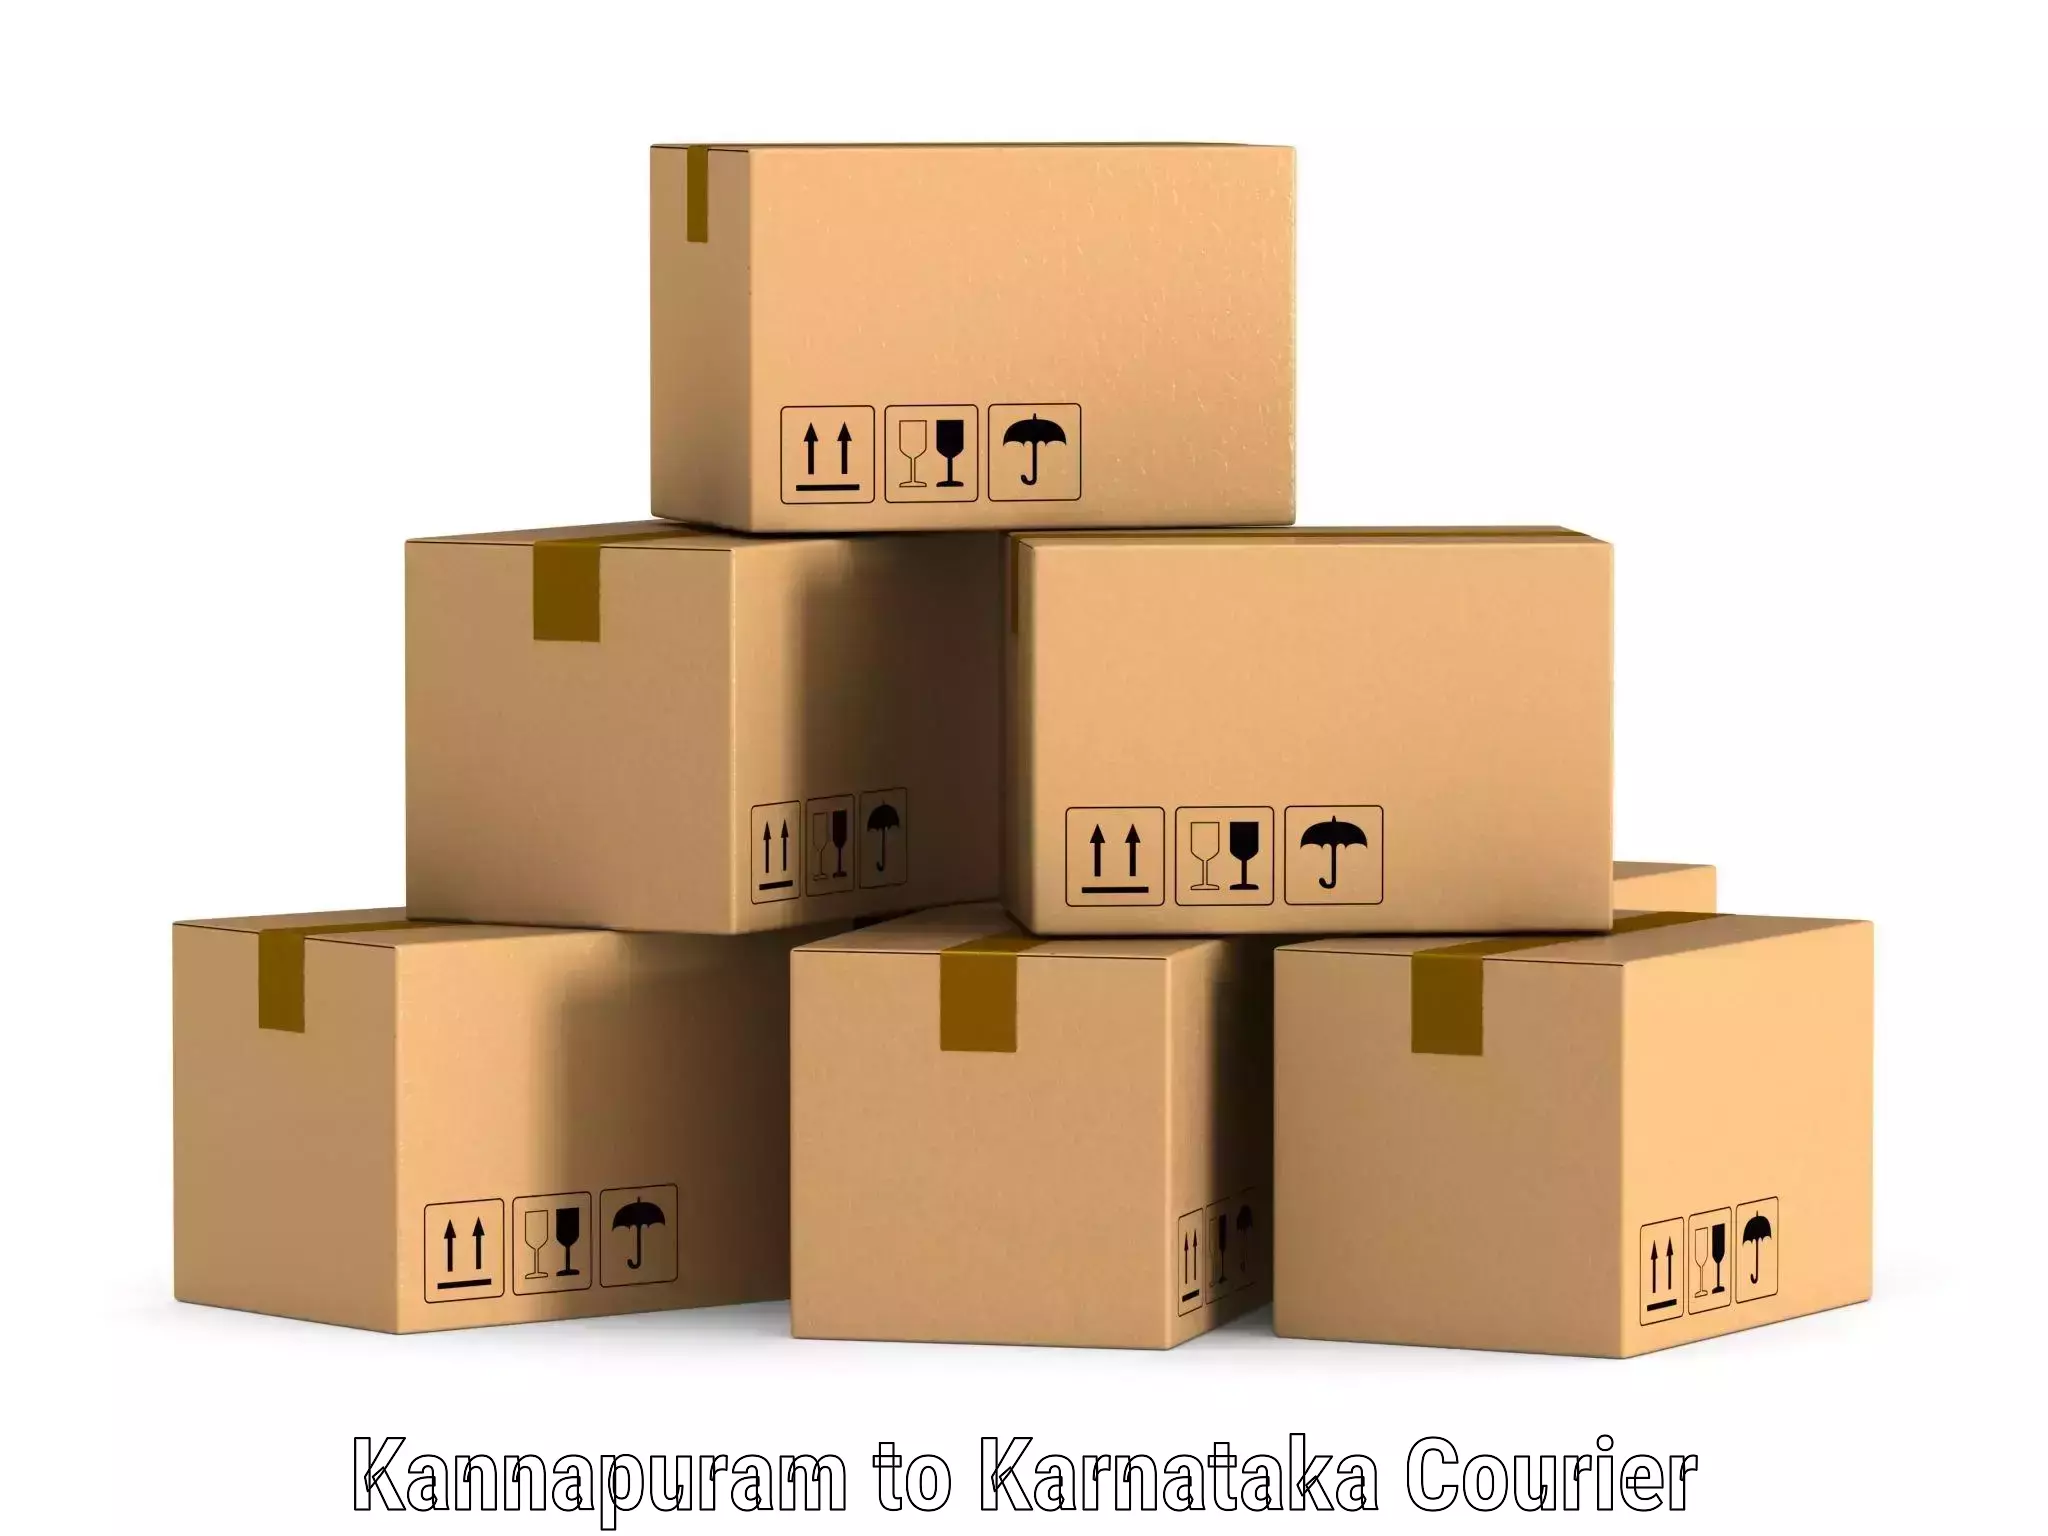 Express package handling in Kannapuram to Hagaribommanahalli